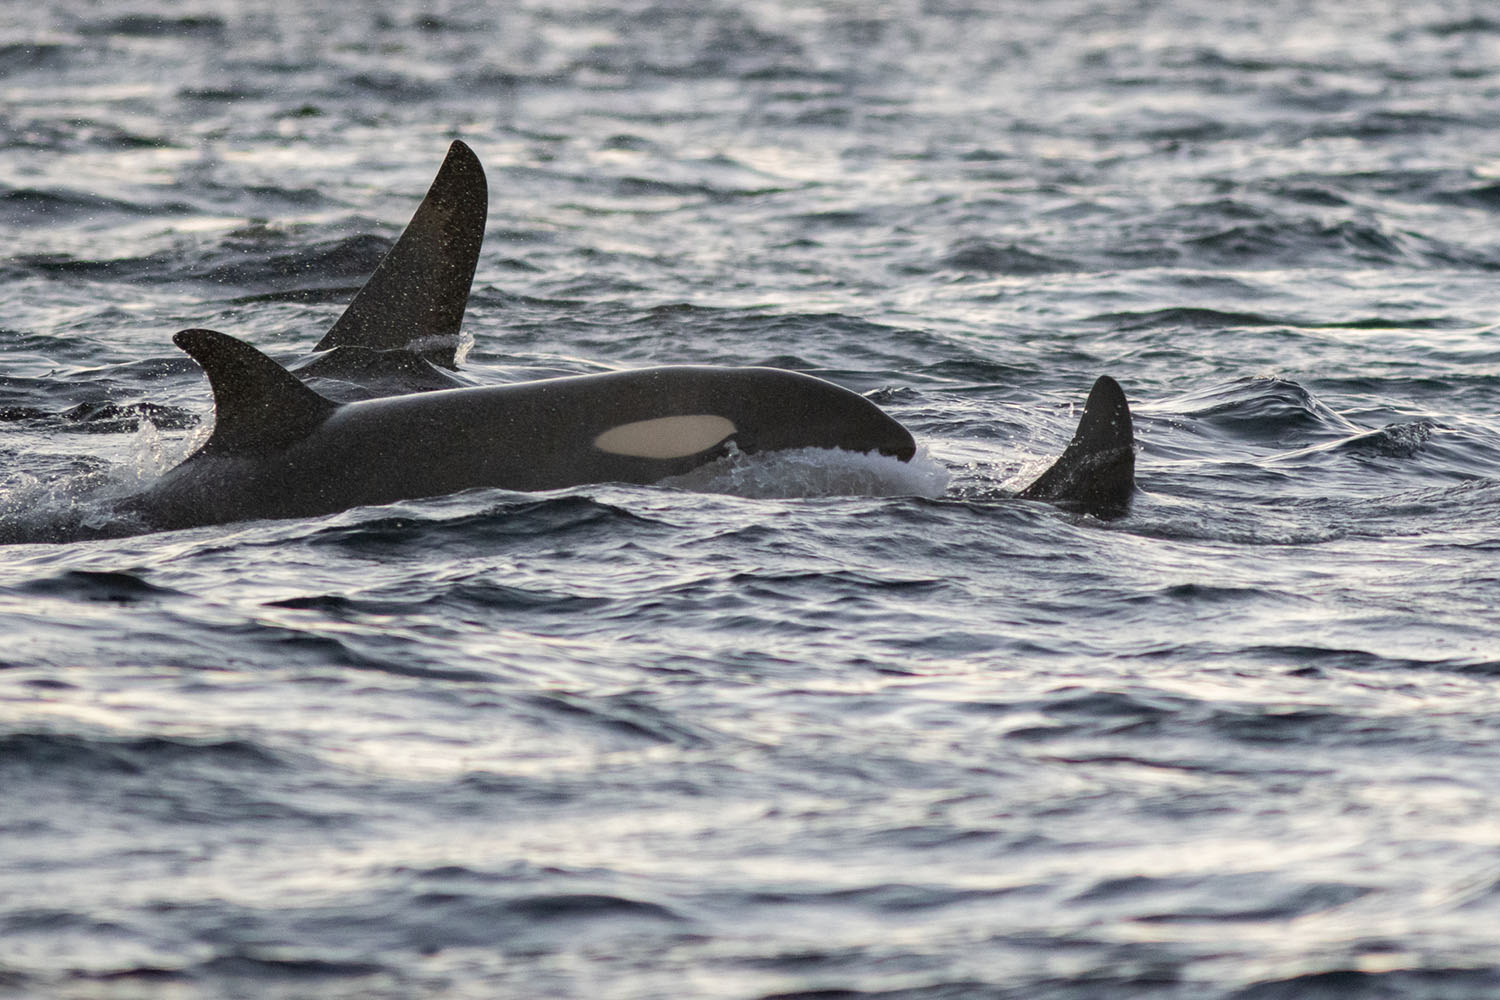 voyage scientifique - orques et baleines a bosse de norvege 49